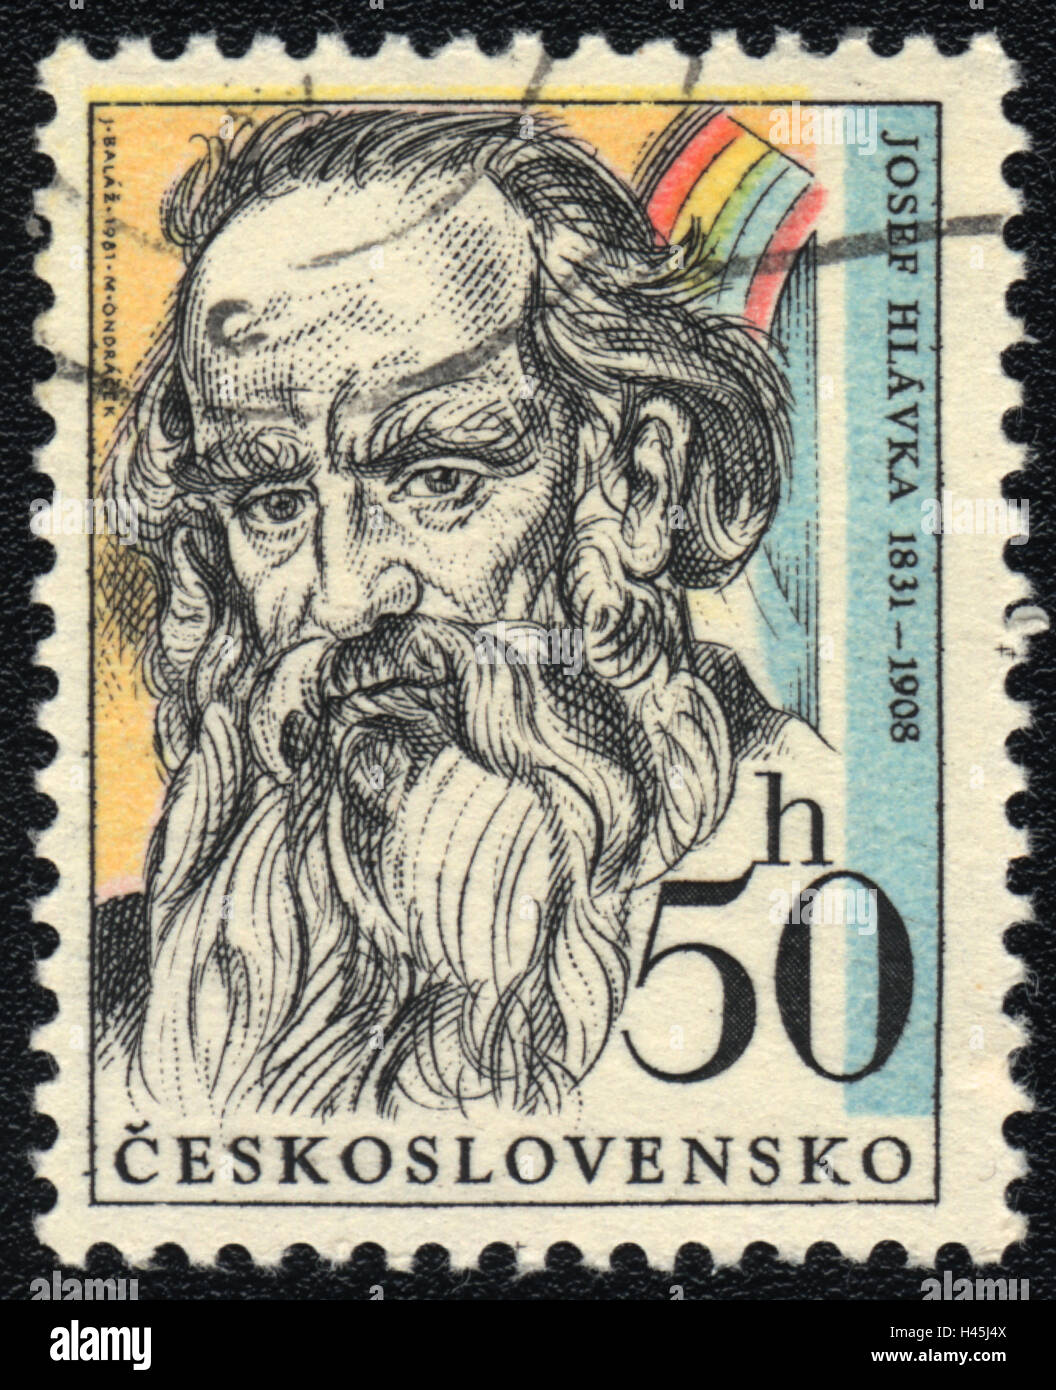 Un timbre-poste imprimé en Tchécoslovaquie, spectacles architecte Josef Hlavka, 1981 Banque D'Images